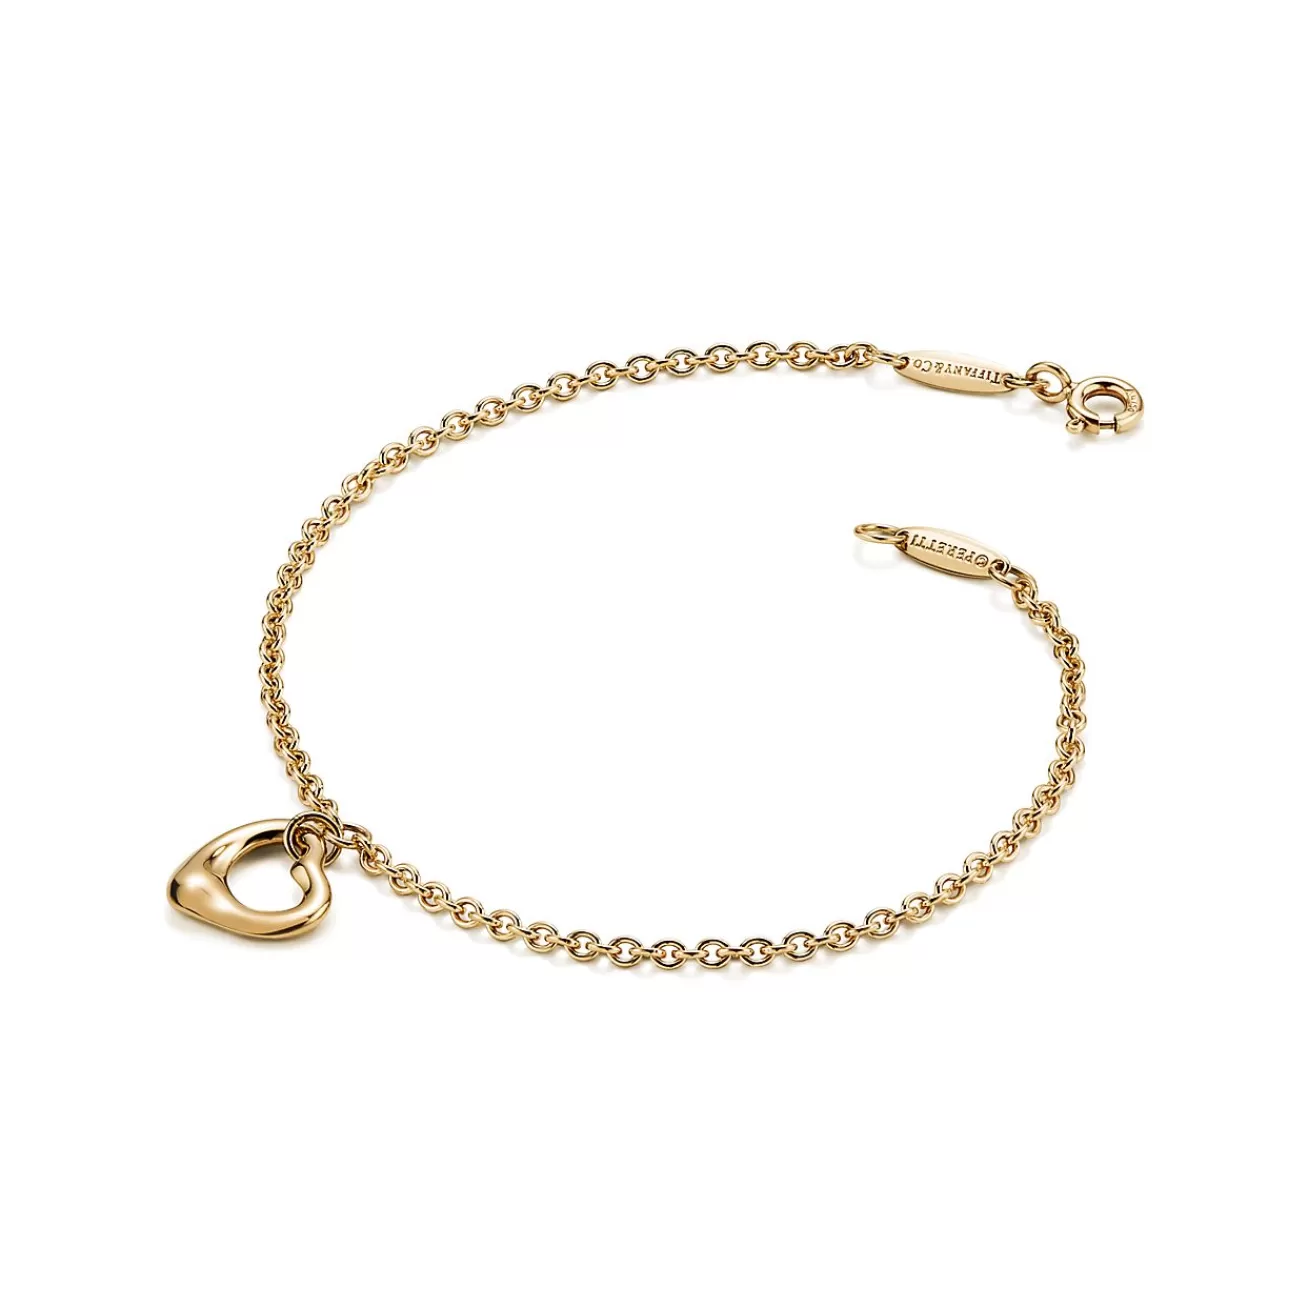 Tiffany & Co. Elsa Peretti® Open Heart Bracelet in Yellow Gold, 11 mm | ^ Bracelets | Gifts for Her